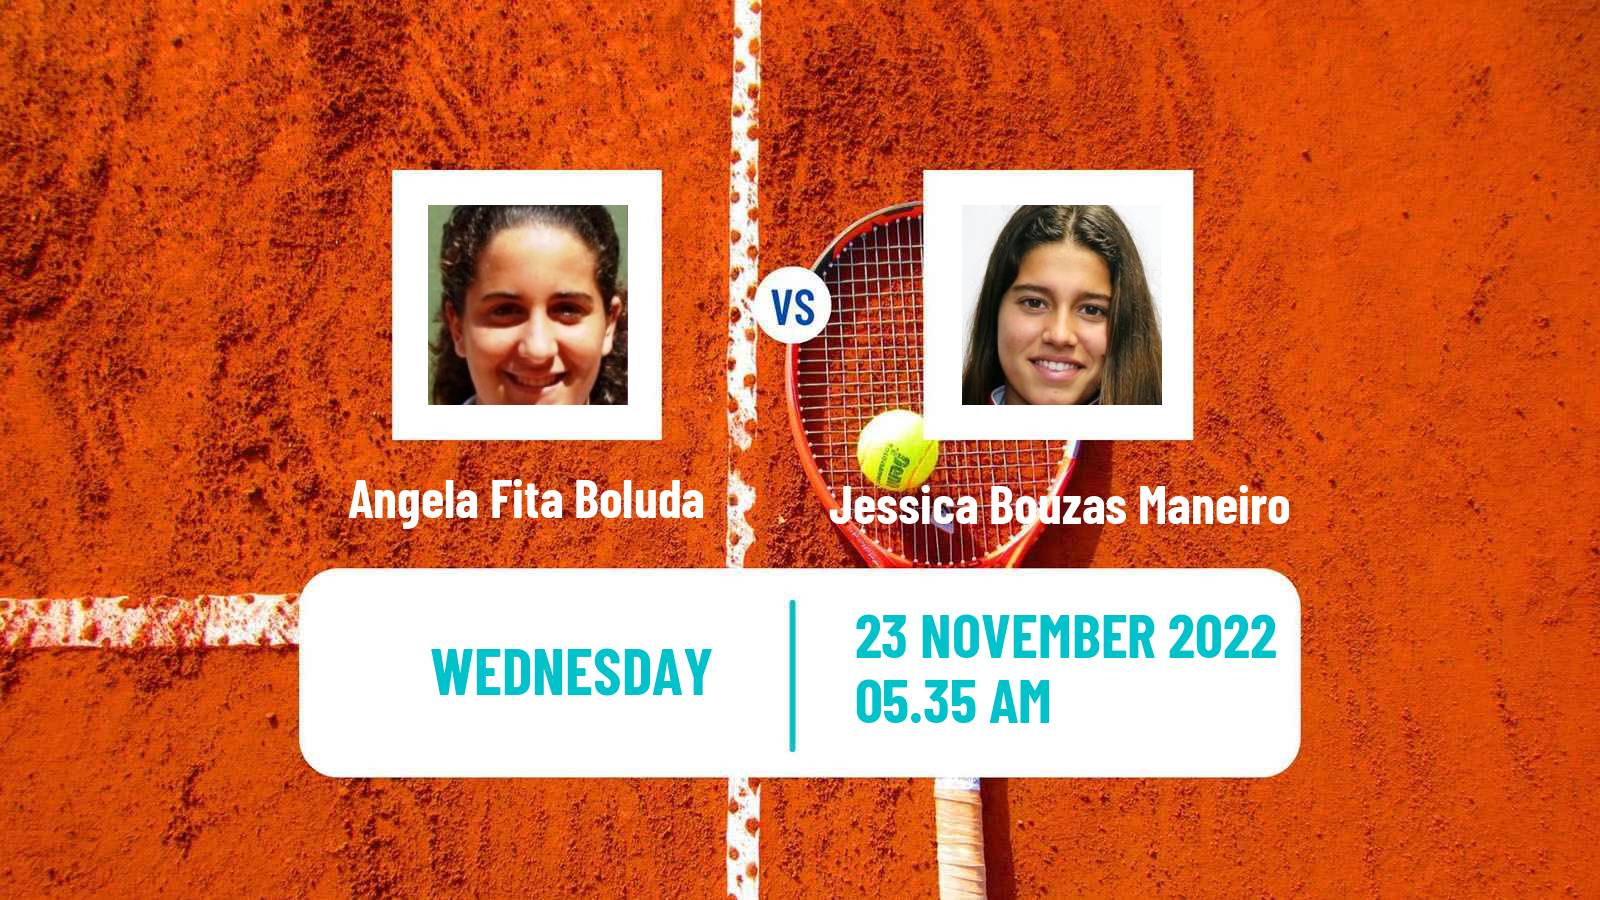 Tennis ITF Tournaments Angela Fita Boluda - Jessica Bouzas Maneiro